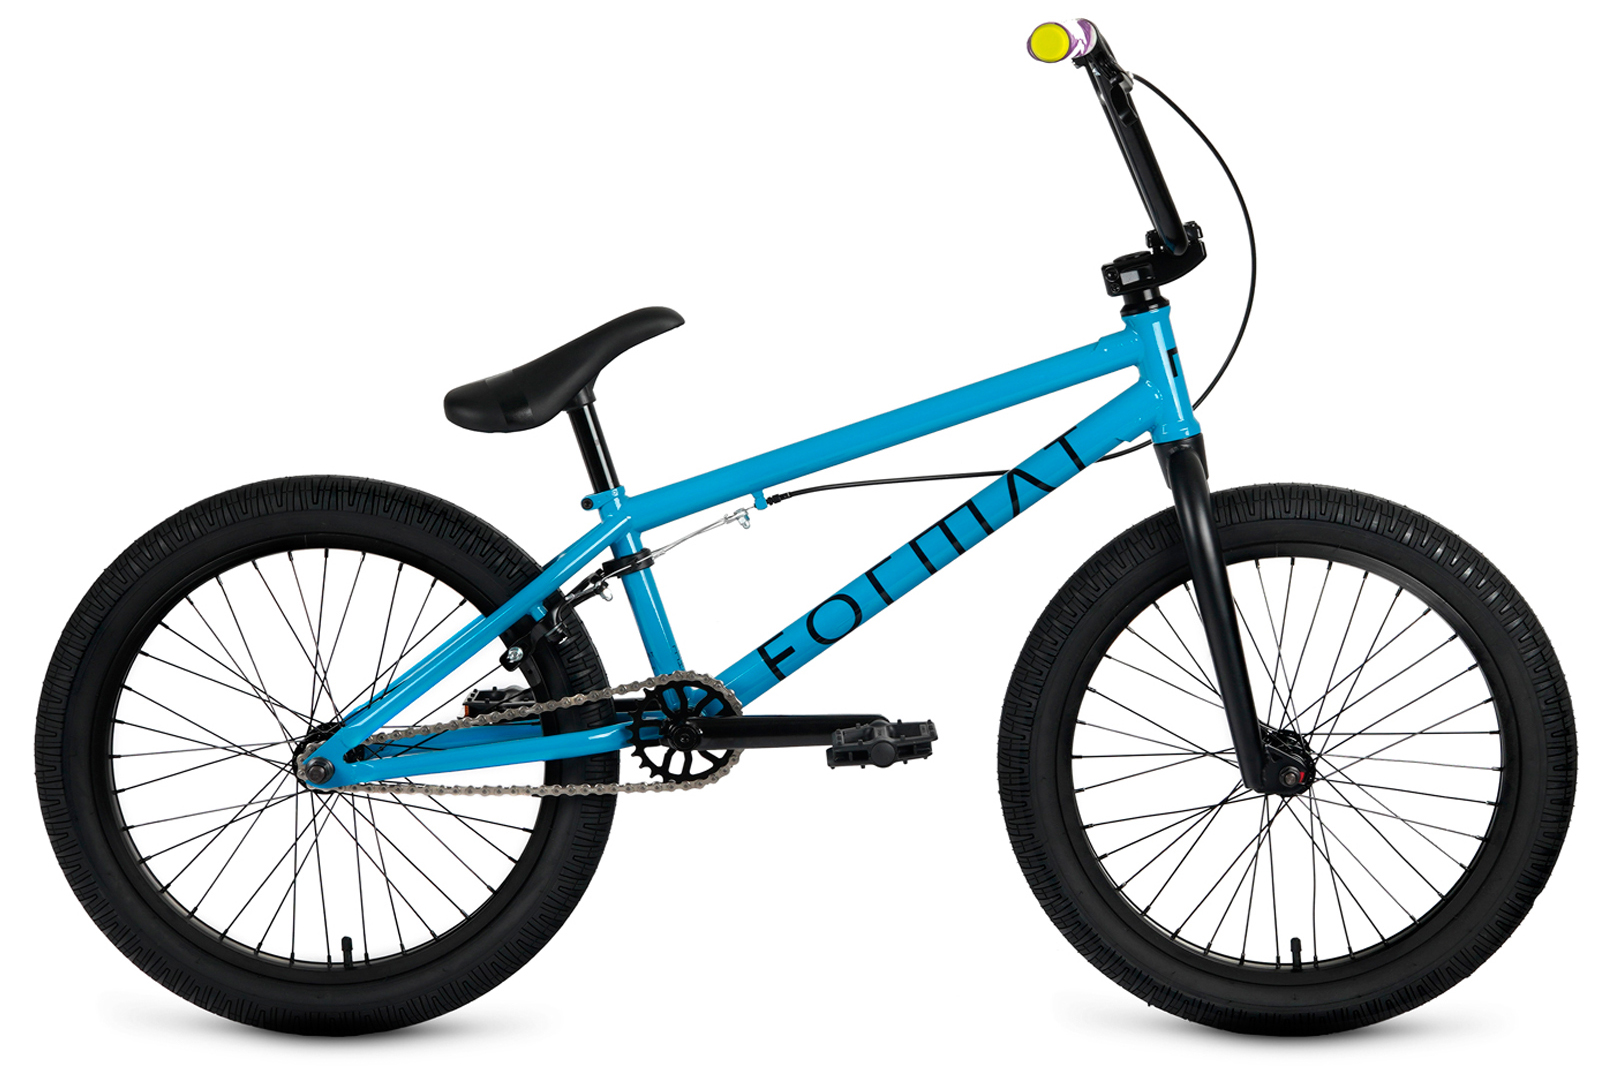  Отзывы о Велосипеде BMX Format 3215 2020